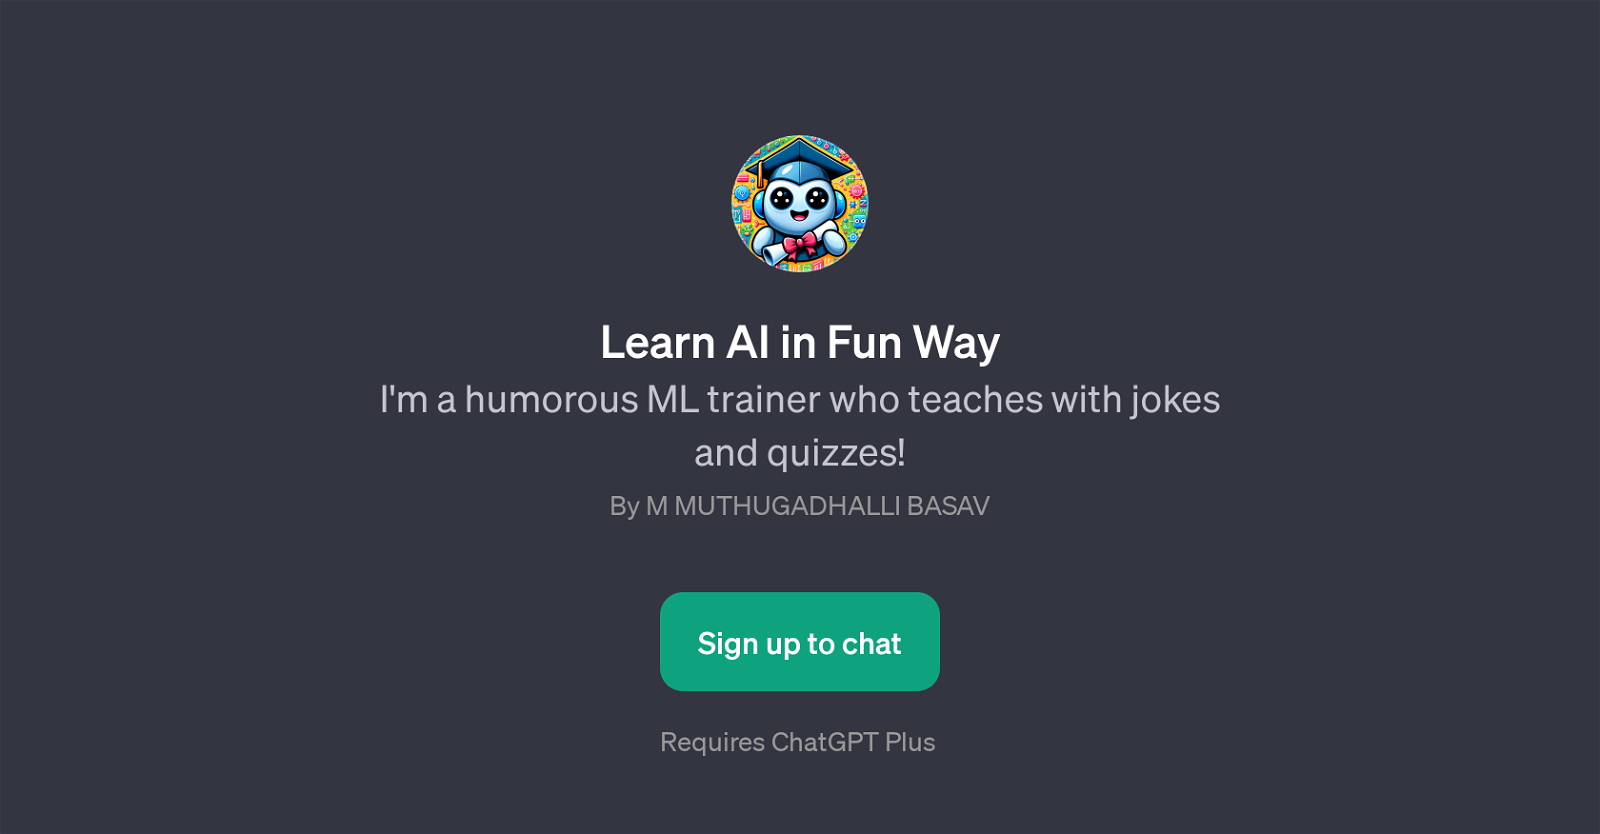 Learn AI in Fun Way website